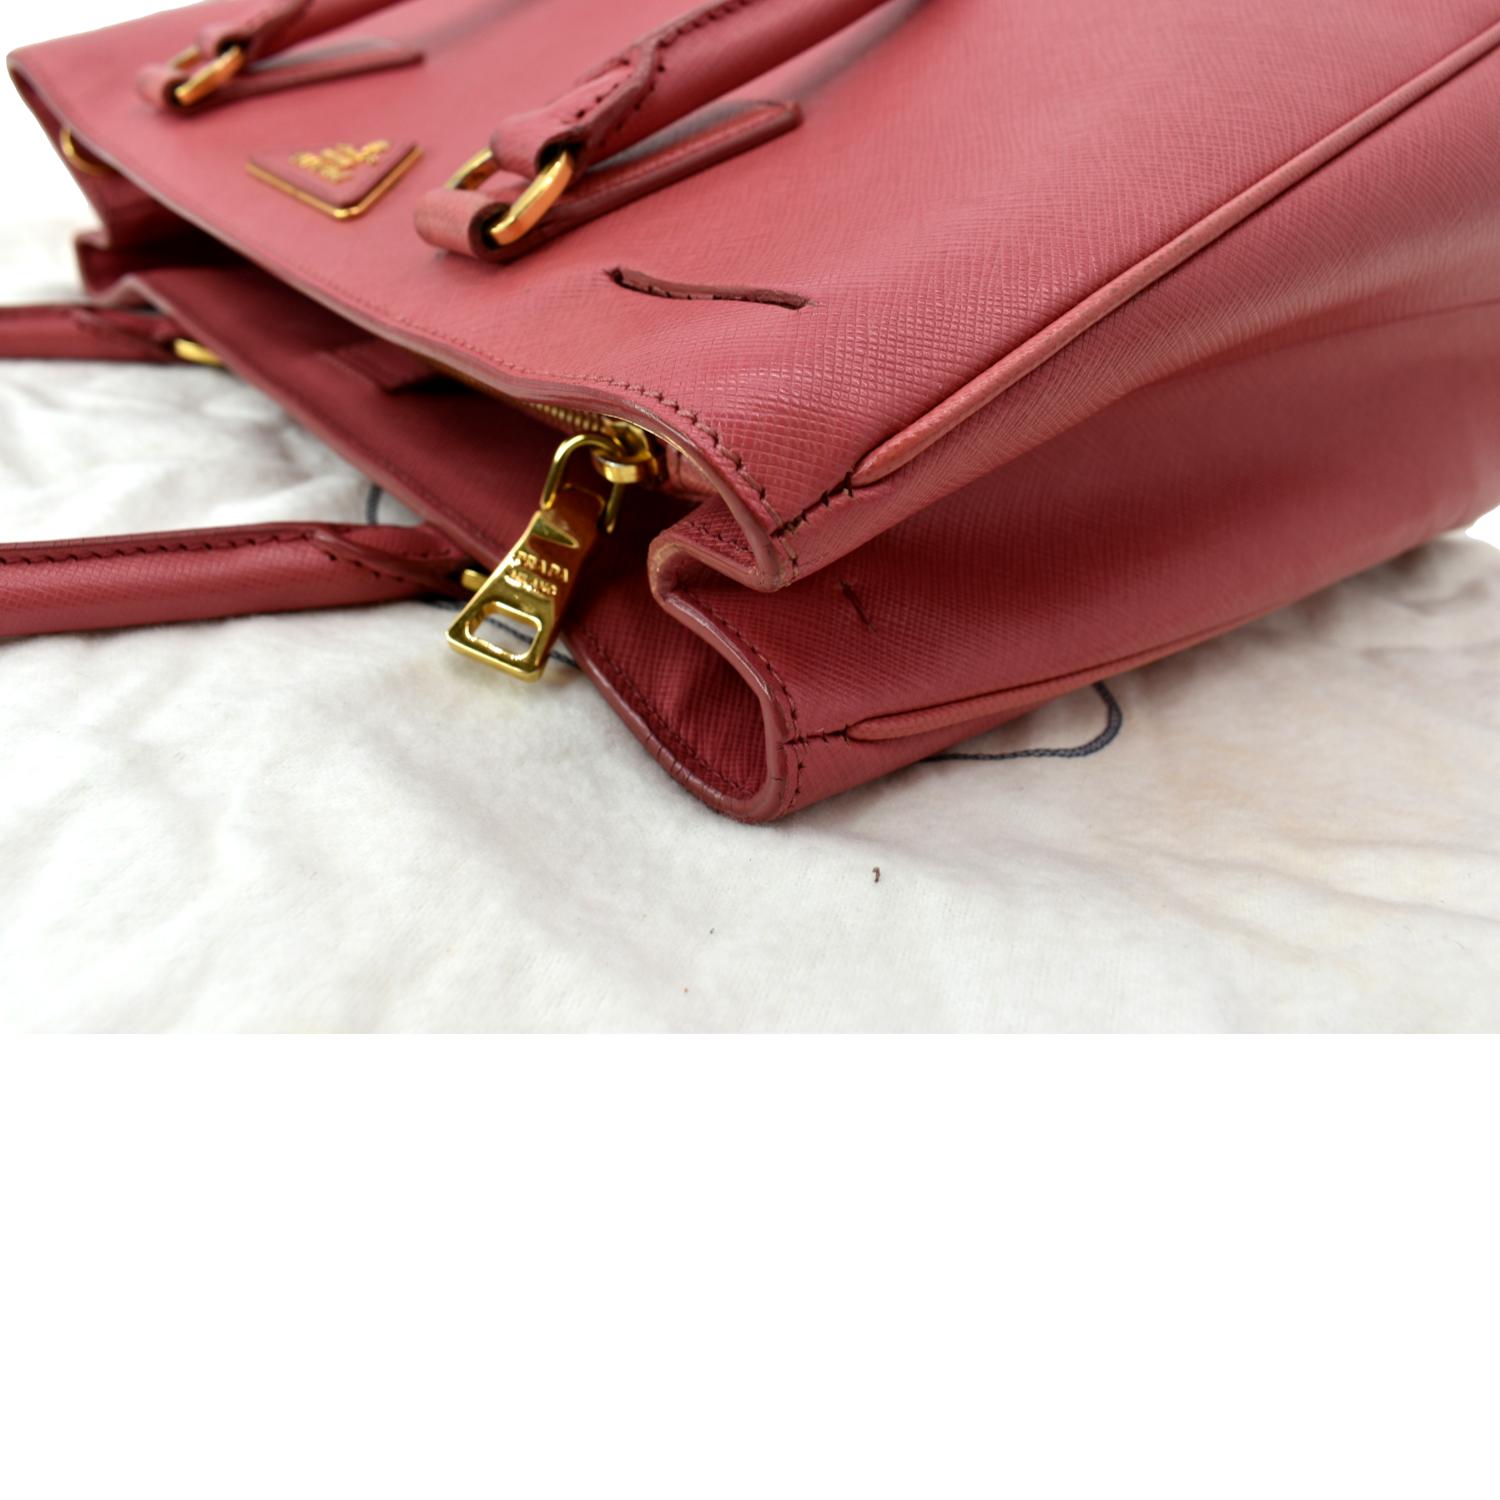 Prada galleria pink leather - Gem